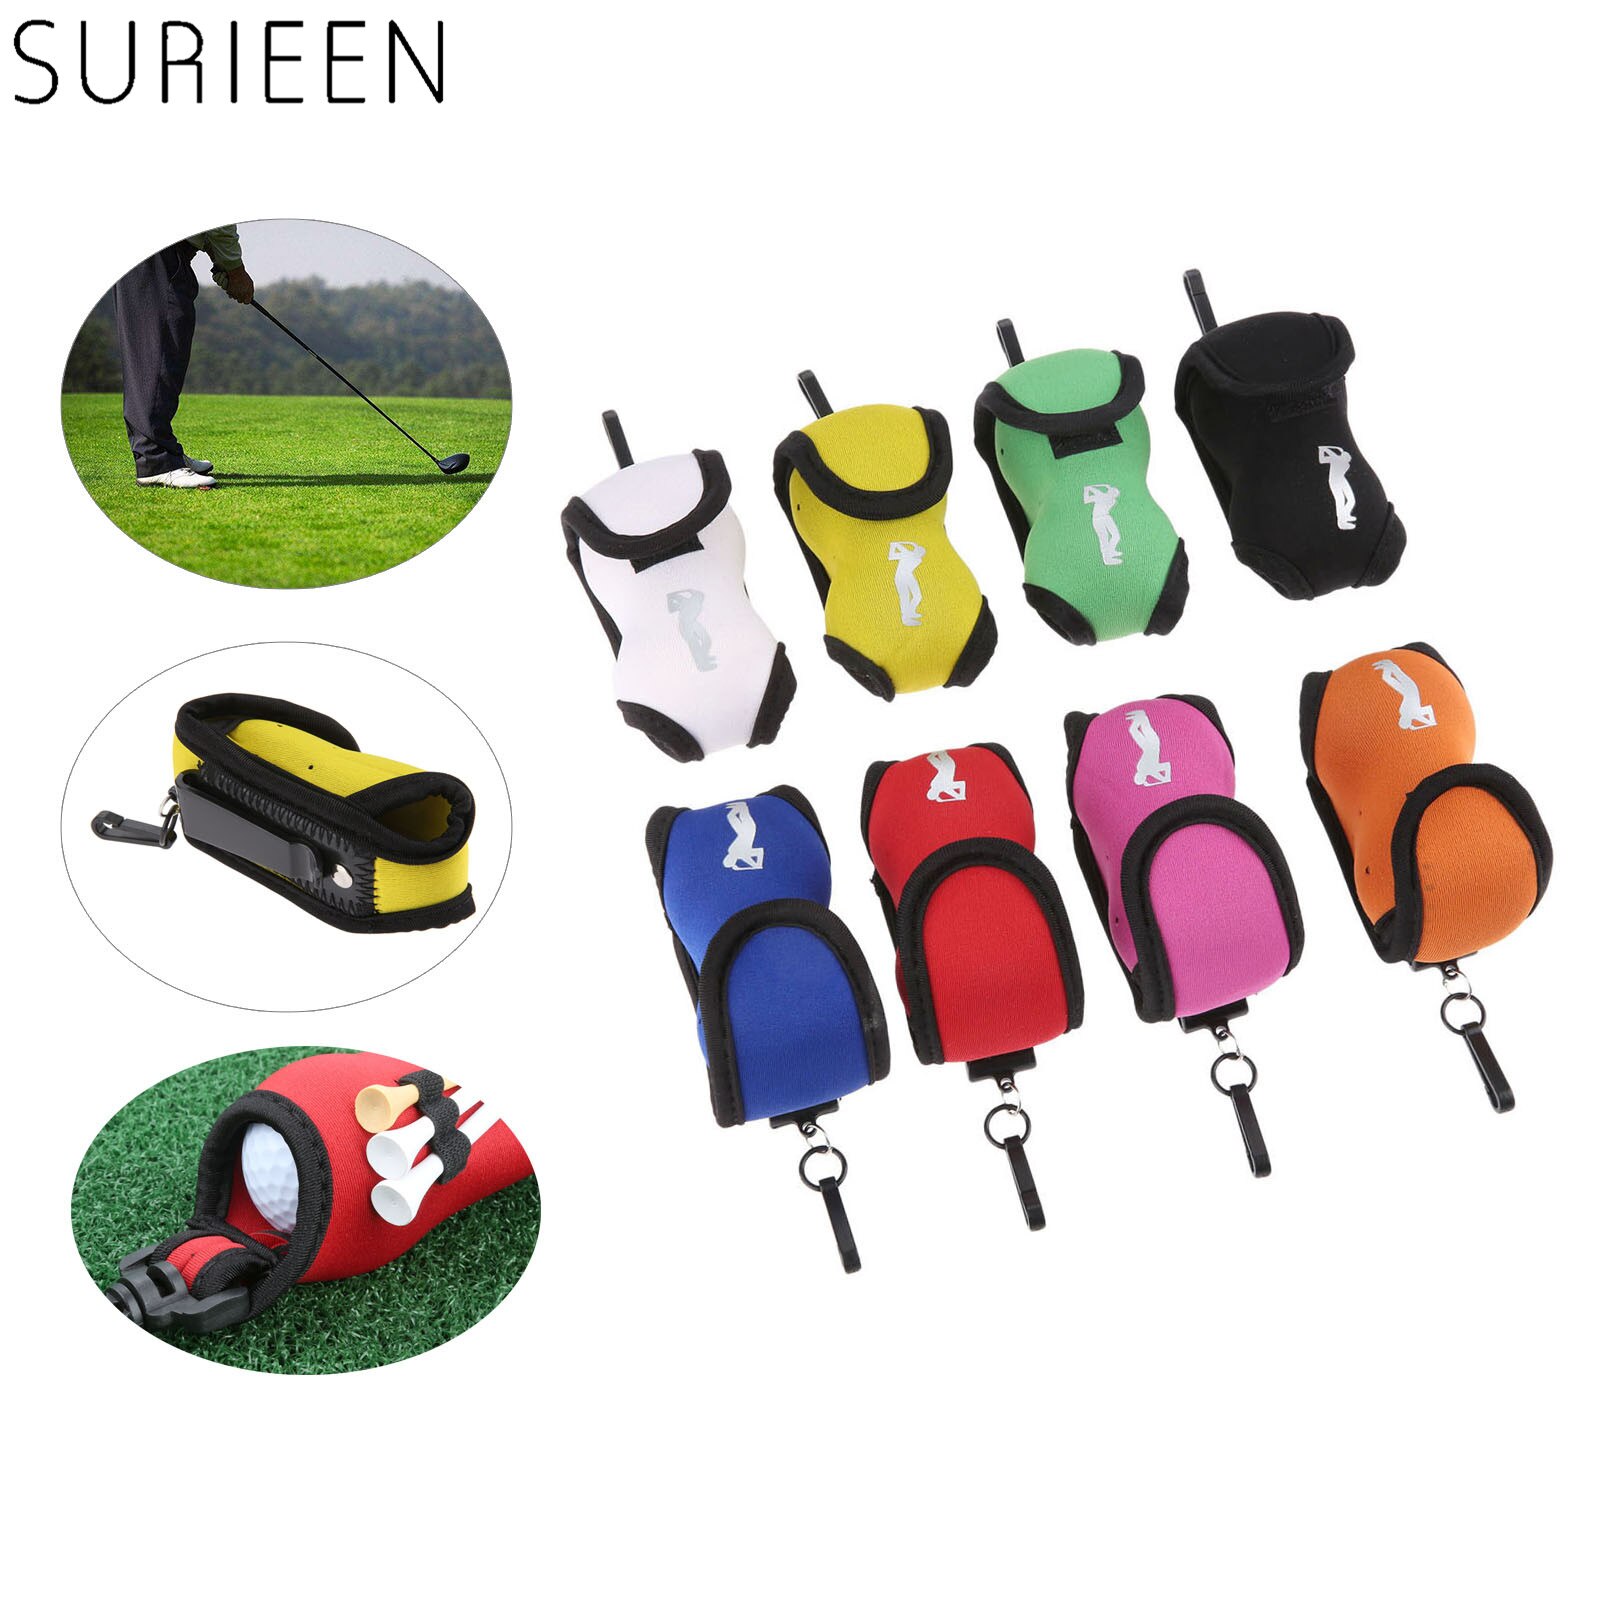 Draagbare Neopreen Mini Golfbal Zak Golf Tees Houder Storage Case Carry Pouch Pack Met Taille Riemen Clip Voor Training 8 Kleuren